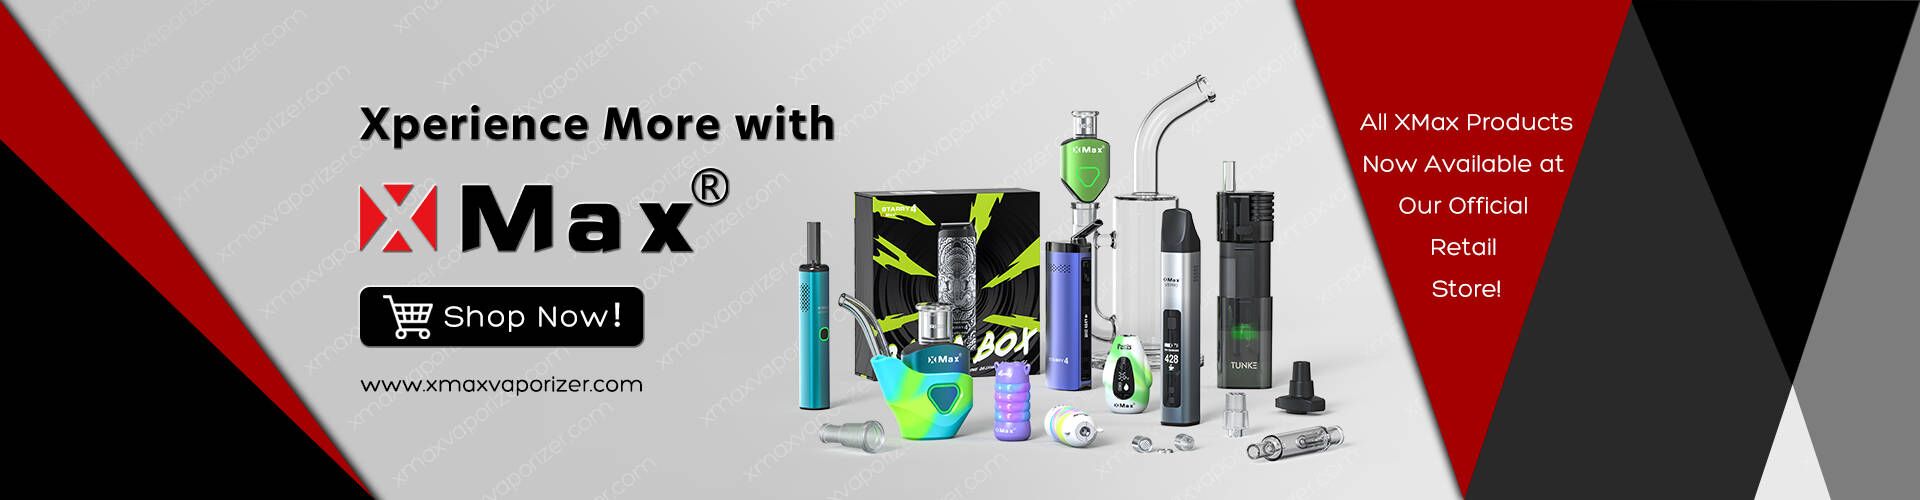 XMax vaporizer official retail web announcemnet